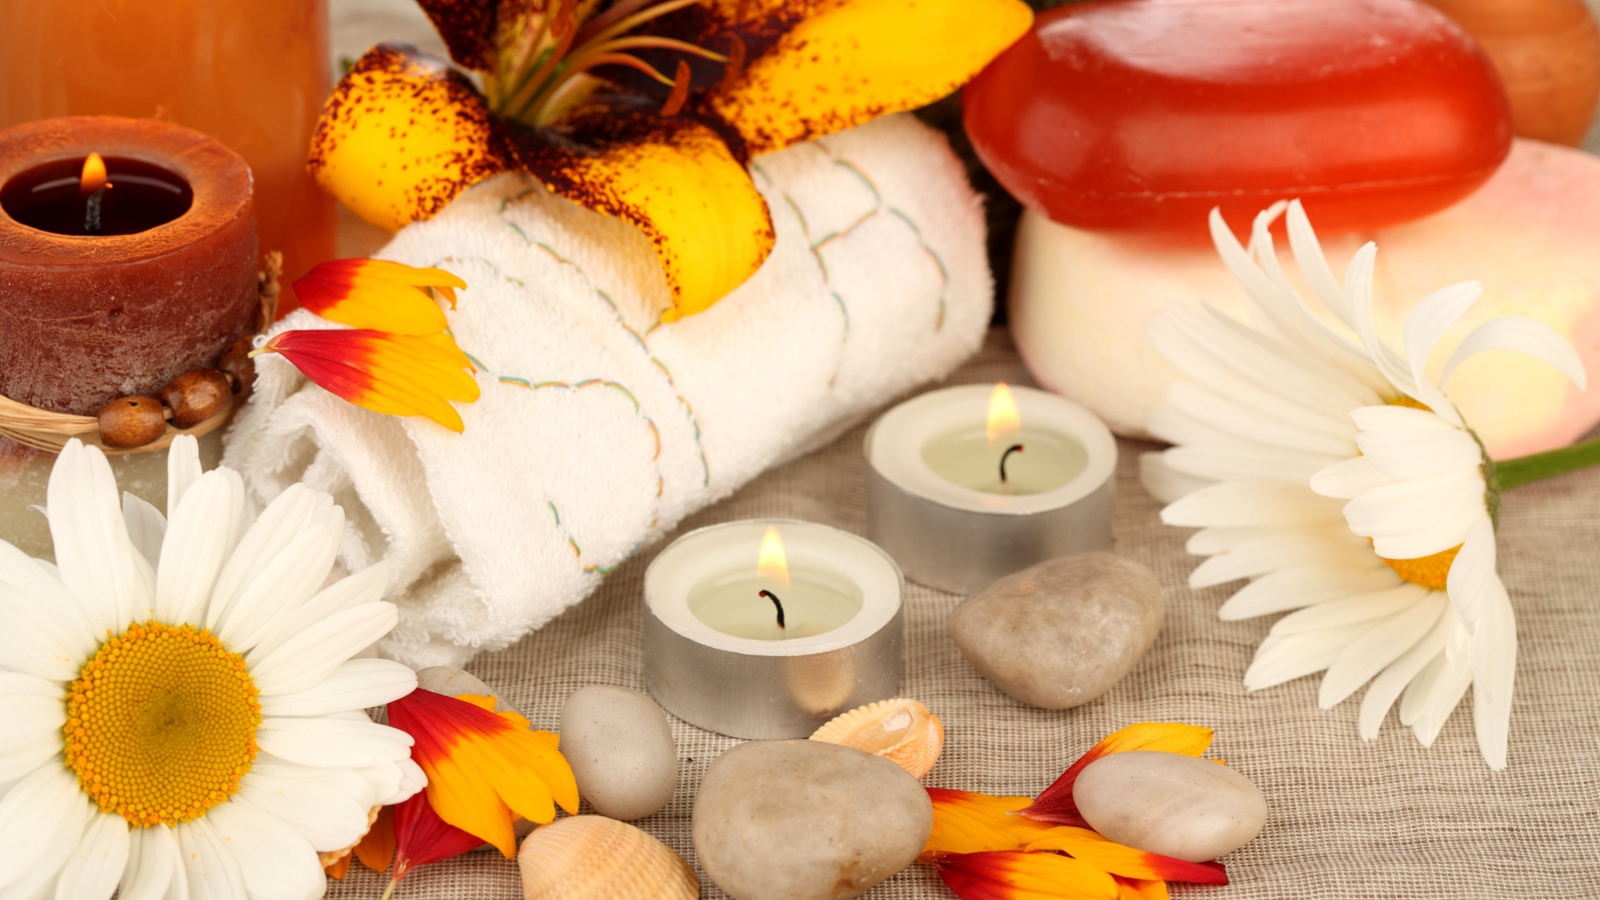 Зажженные свечи на столе с полотенцем, цветами и мылом